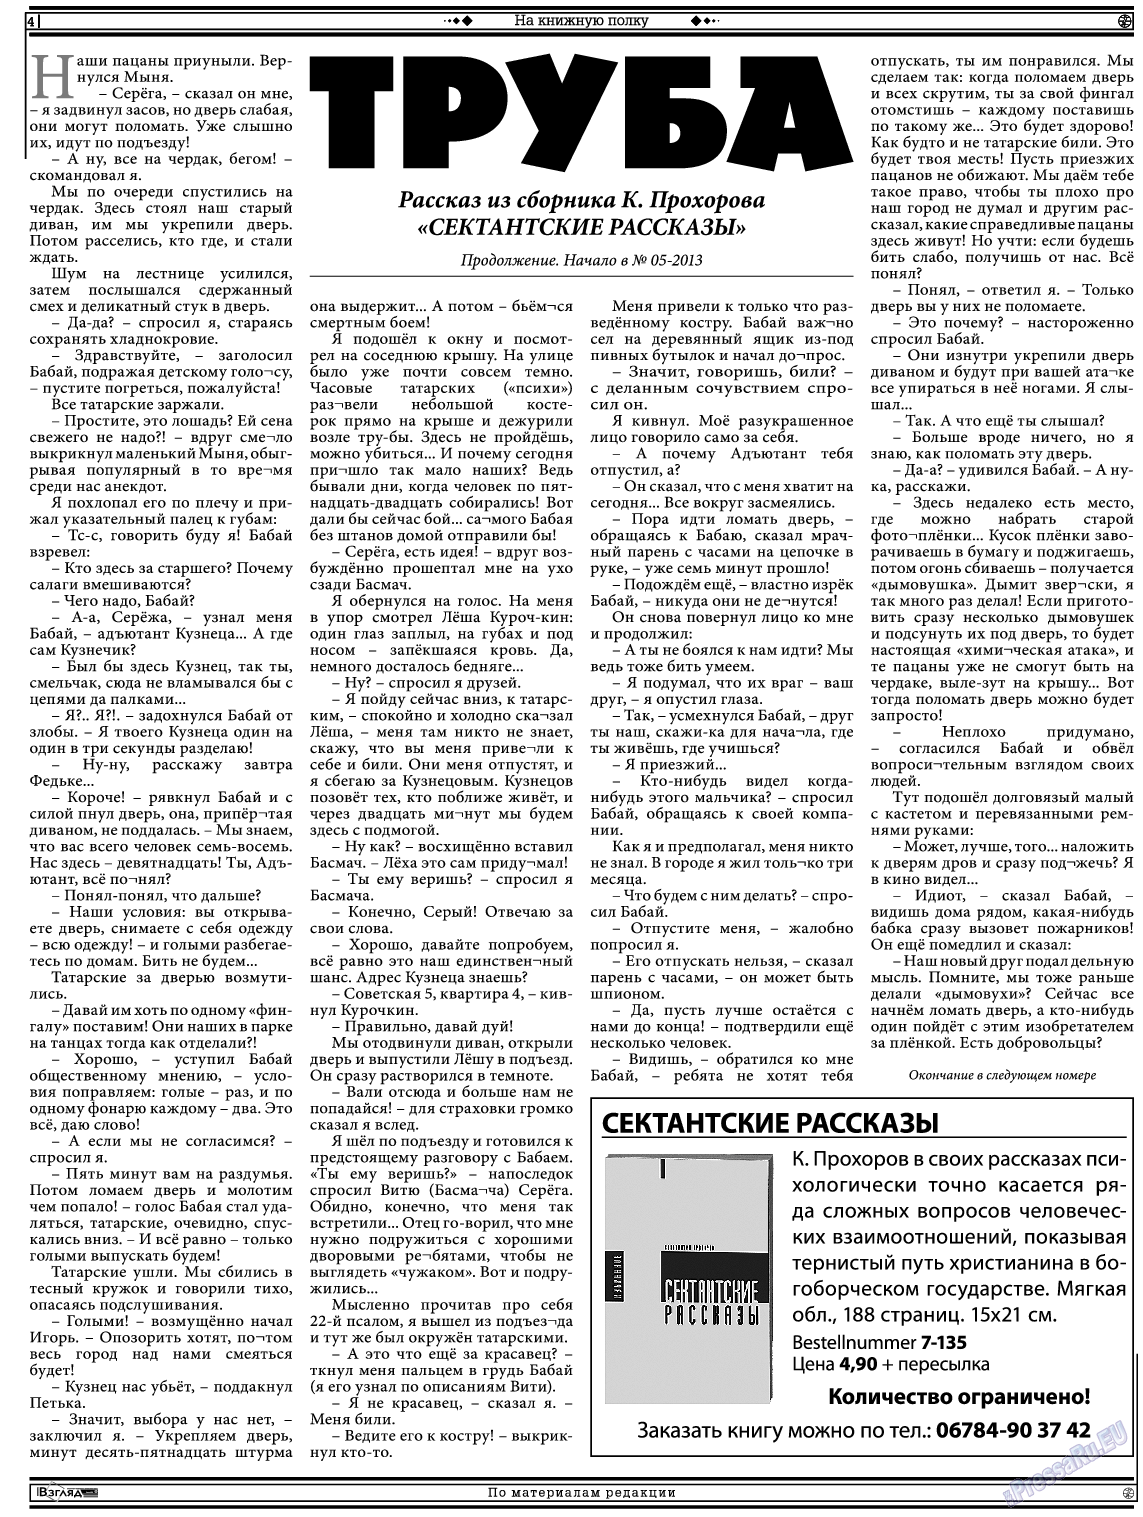 Христианская газета, газета. 2013 №6 стр.18